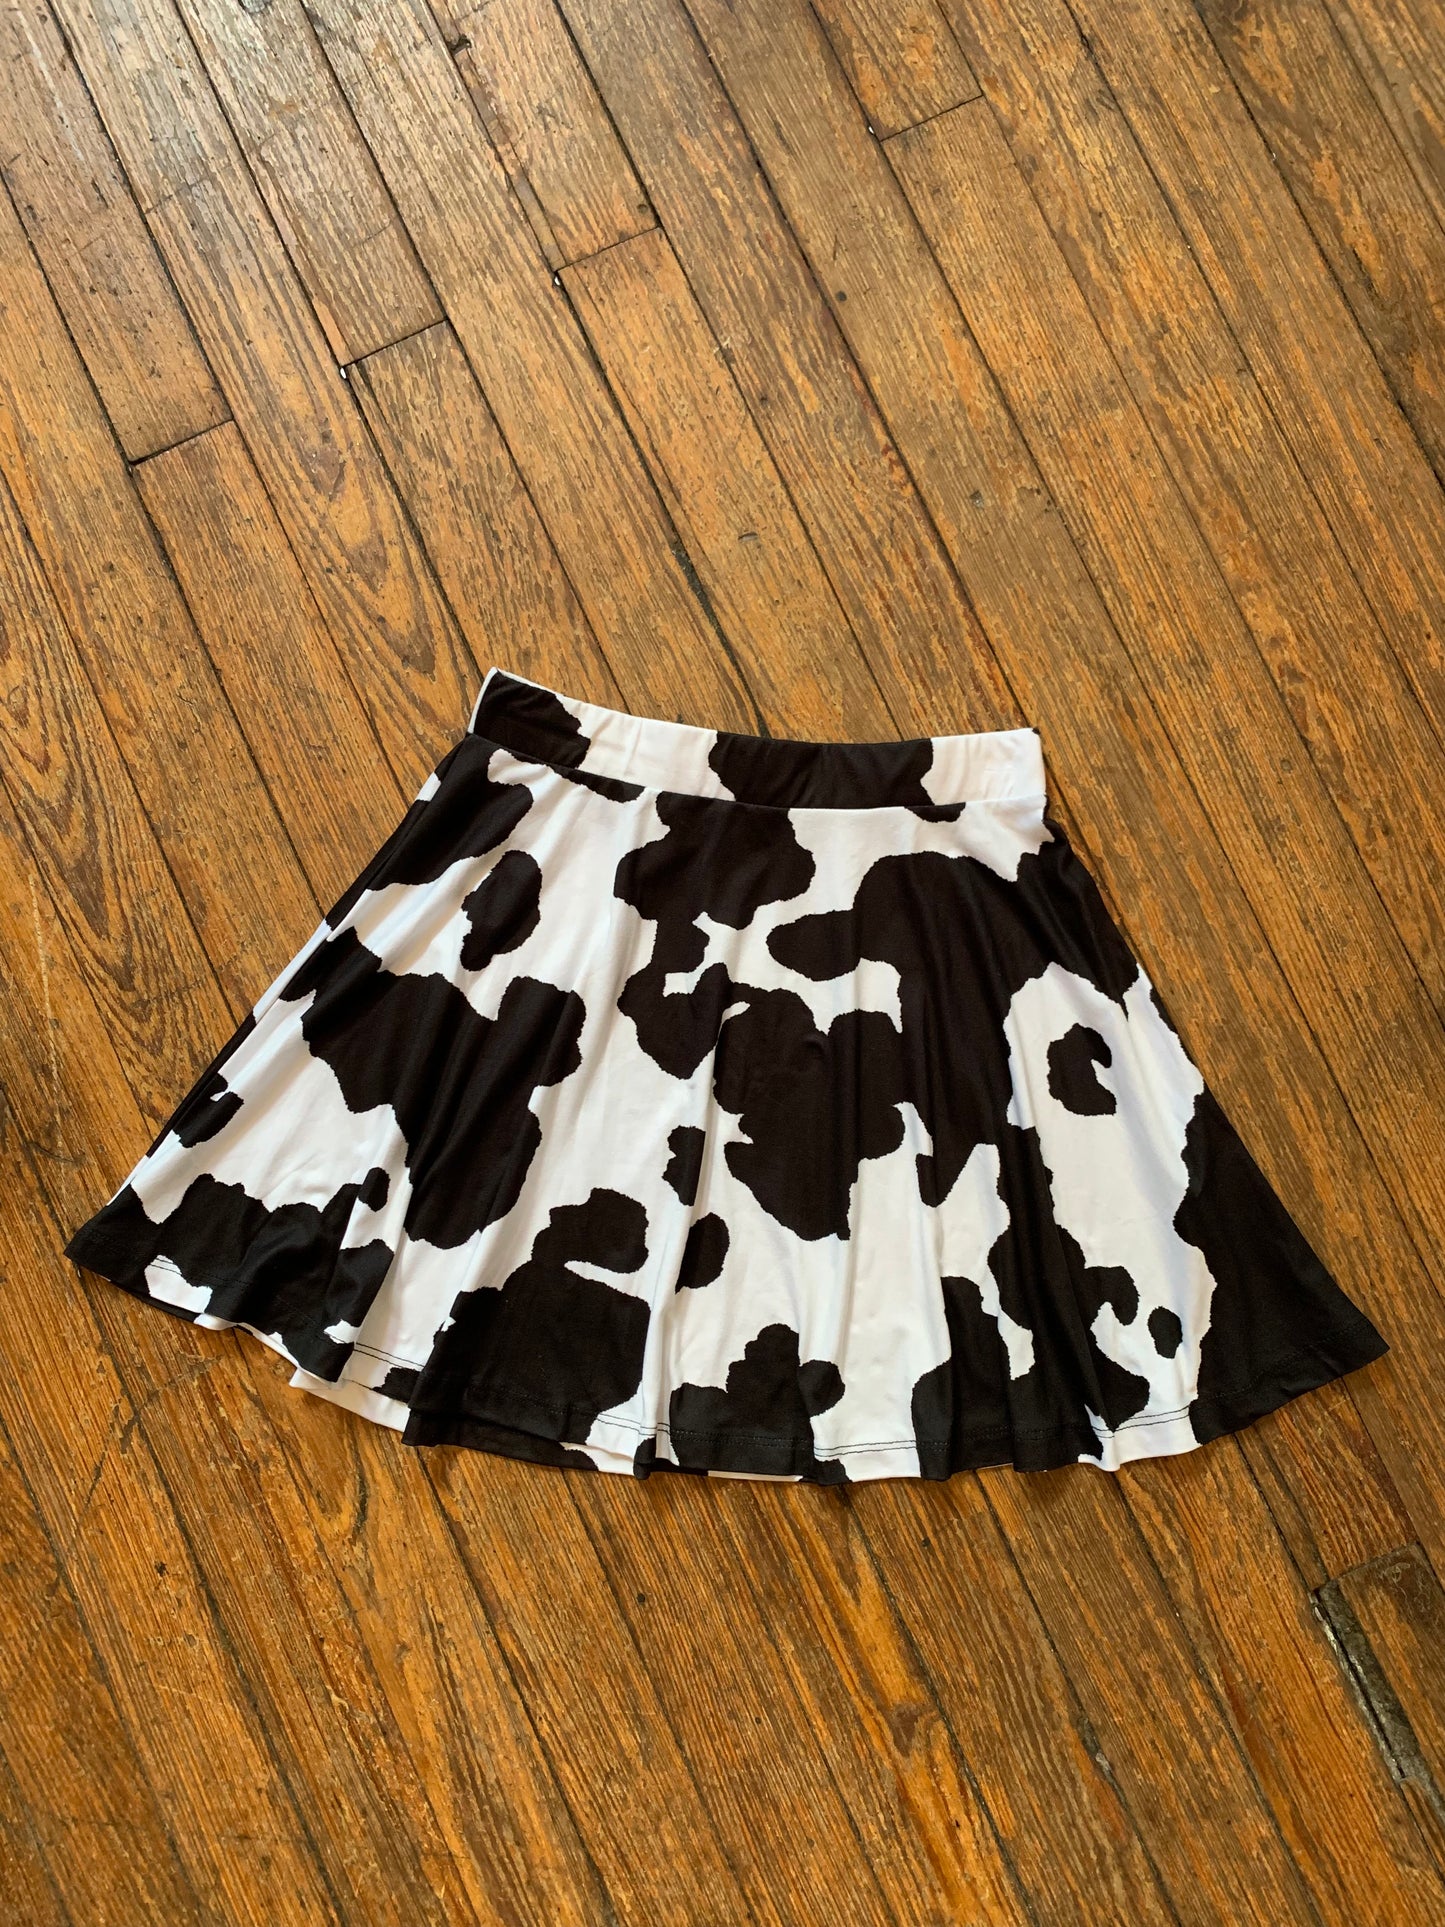 Black and White Cow Print Skater Skirt